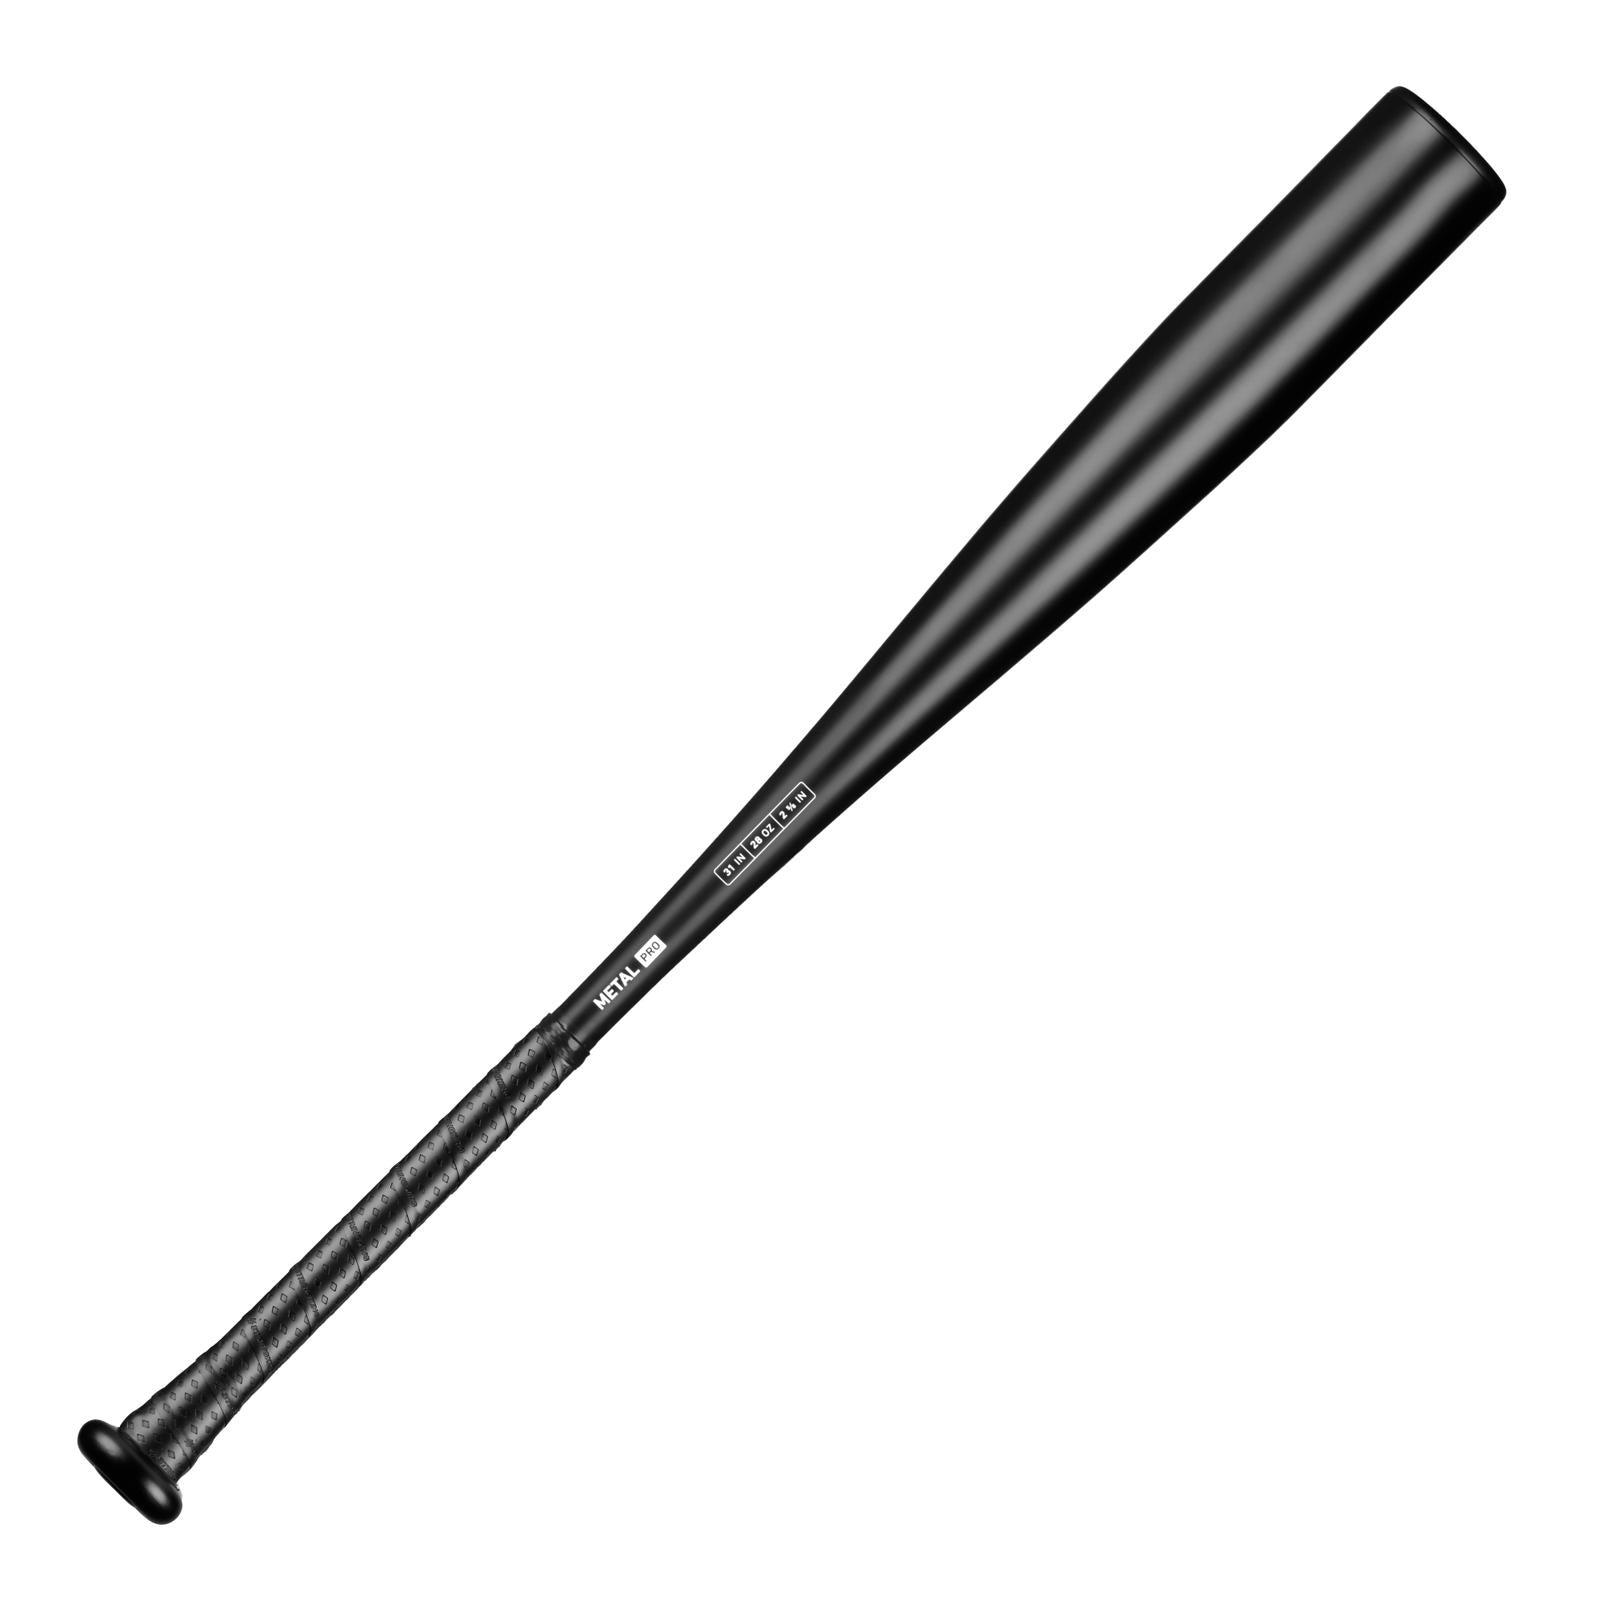 StrikeKing Metal Pro BBCOR Baseball Bat